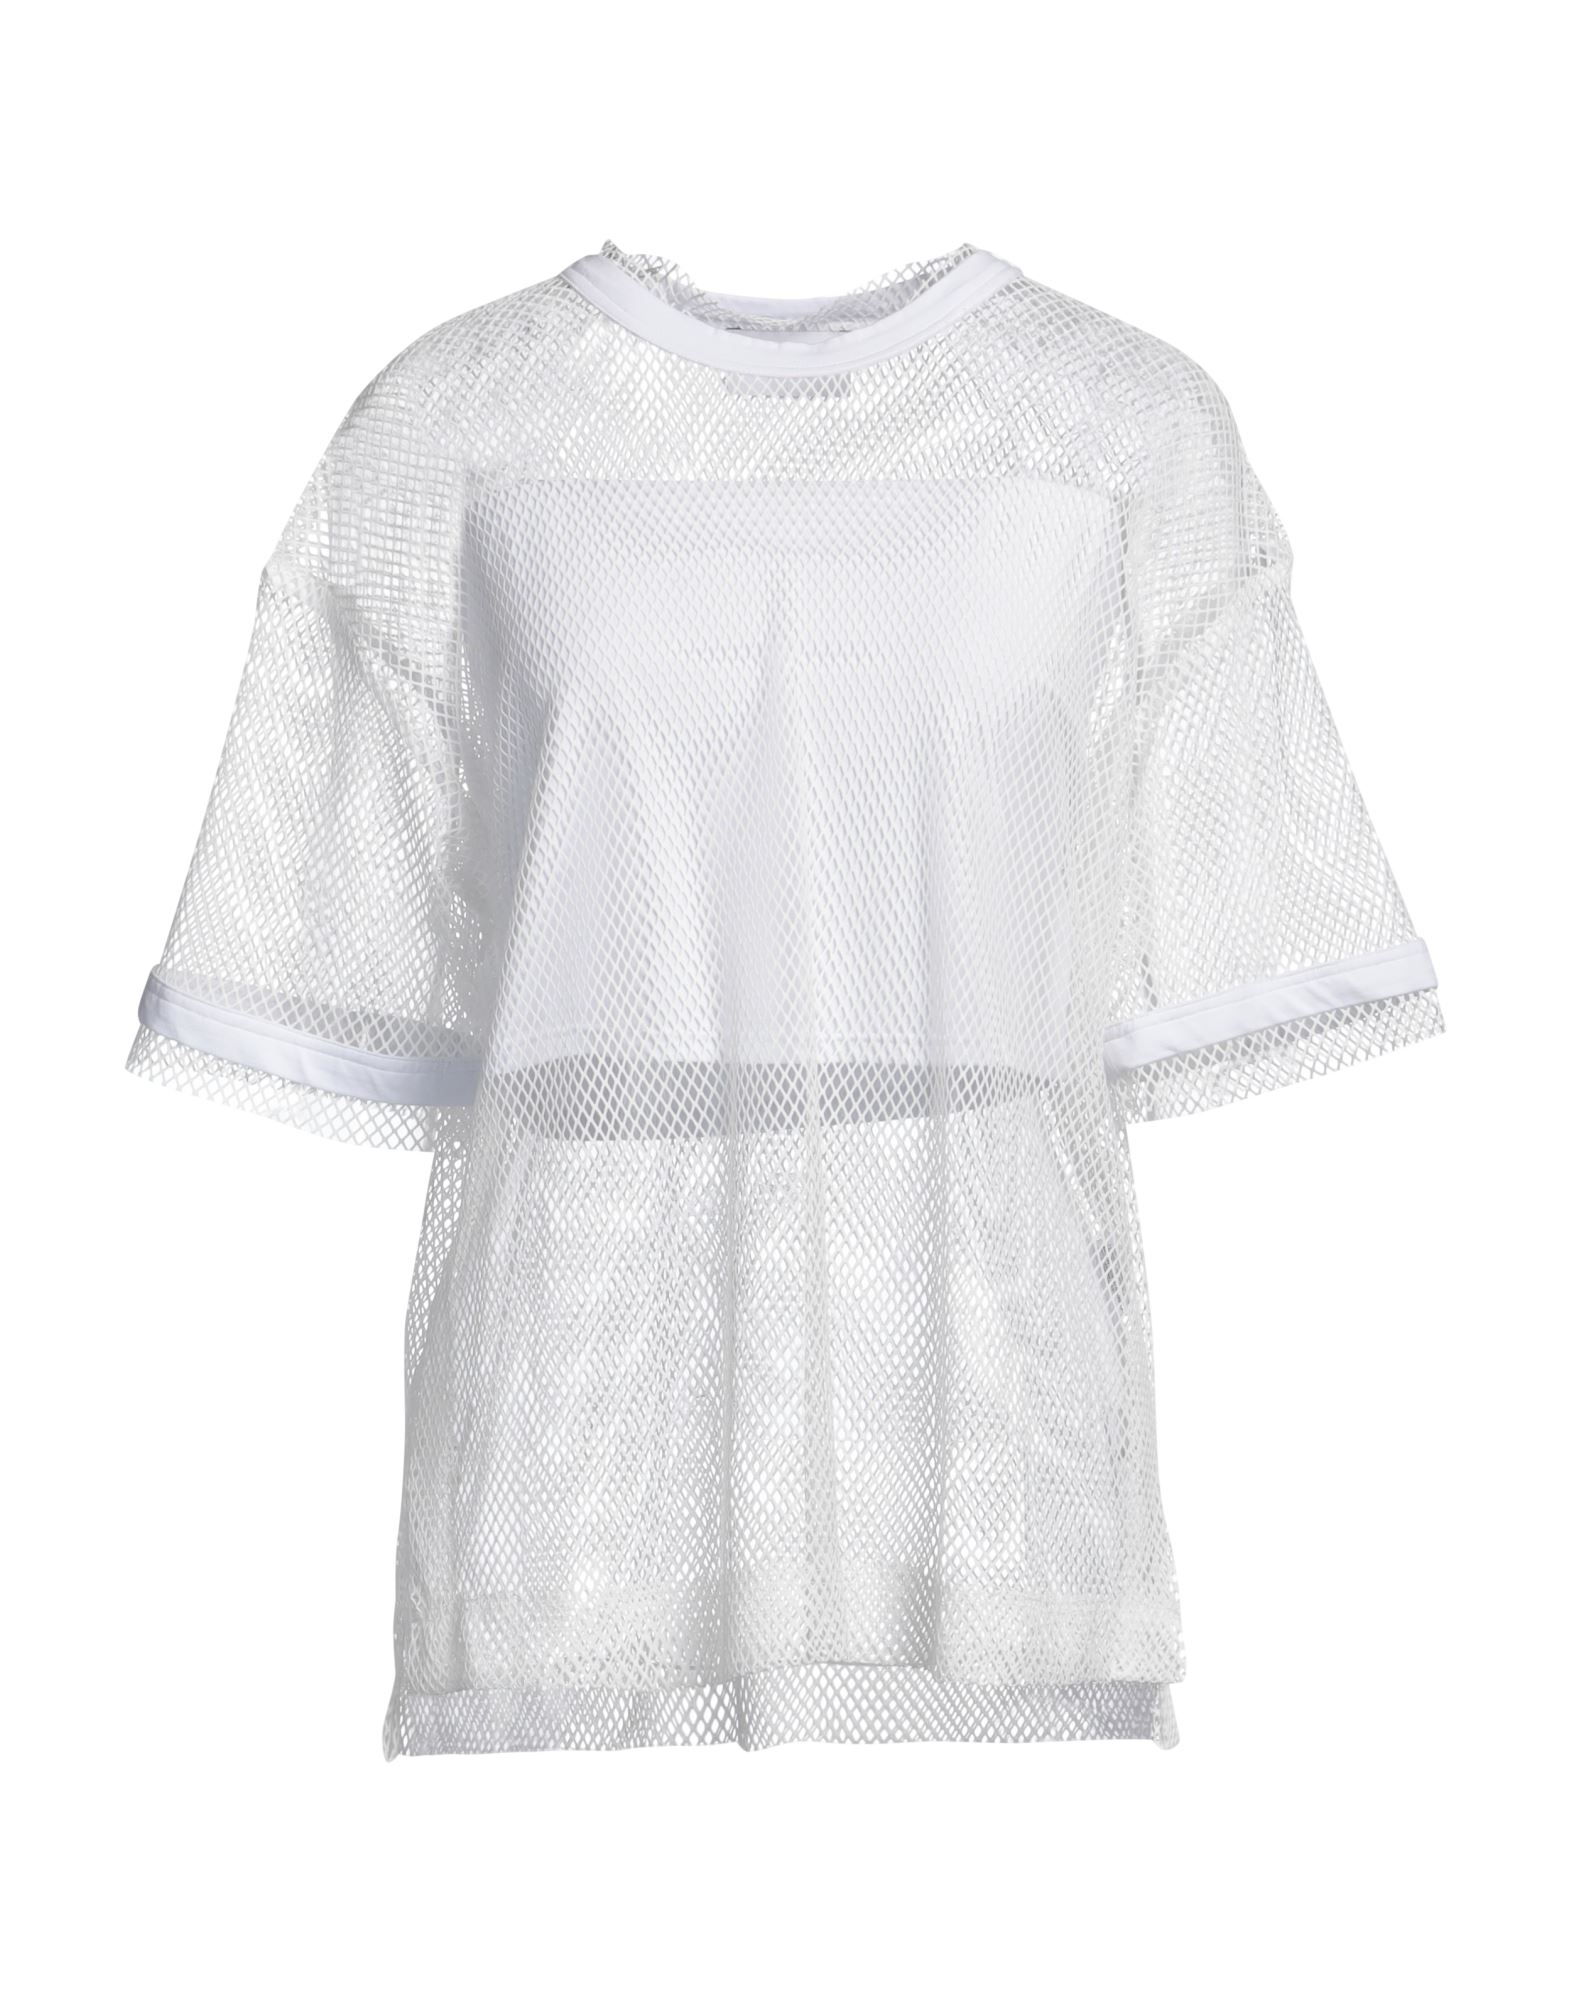 ISABELLE BLANCHE Paris T-shirts Damen Weiß von ISABELLE BLANCHE Paris